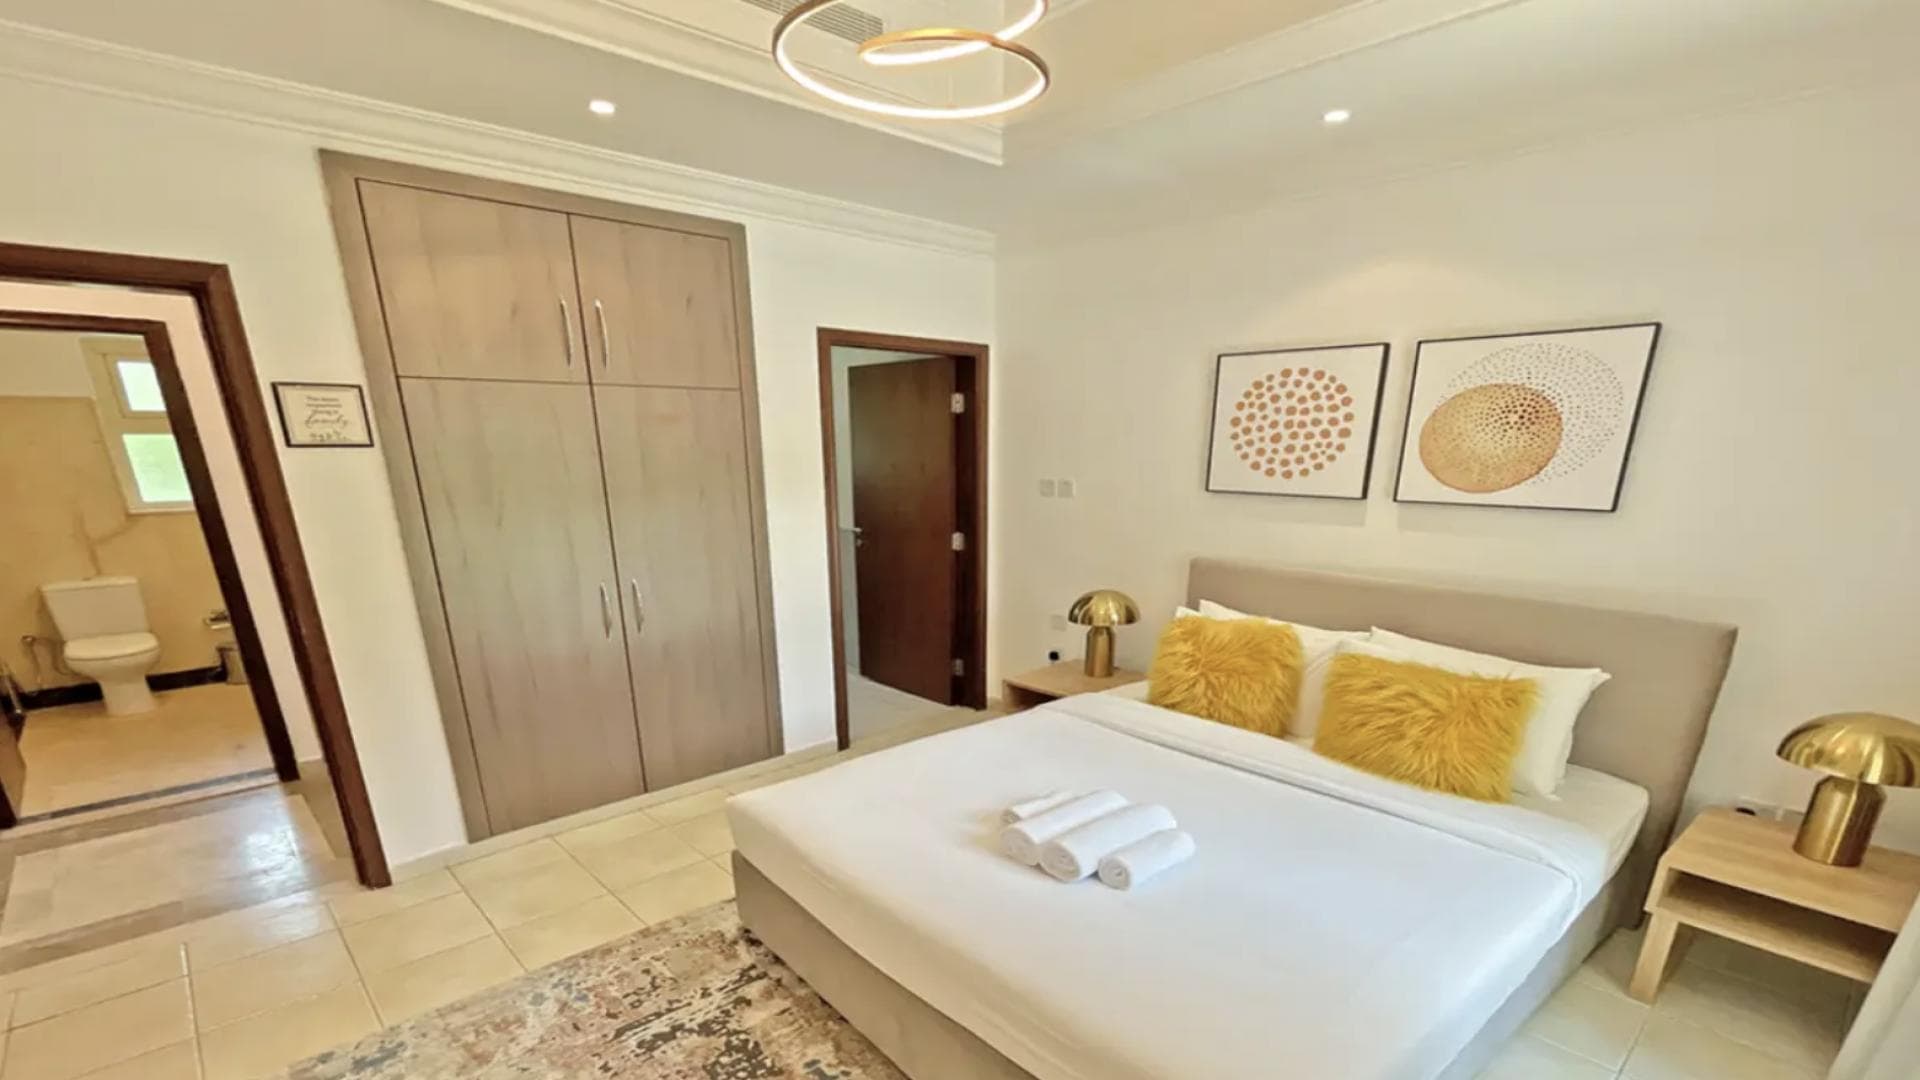 4 Bedroom Villa For Rent Al Thamam 13 Lp34806 Cfb462c08b4dd00.png